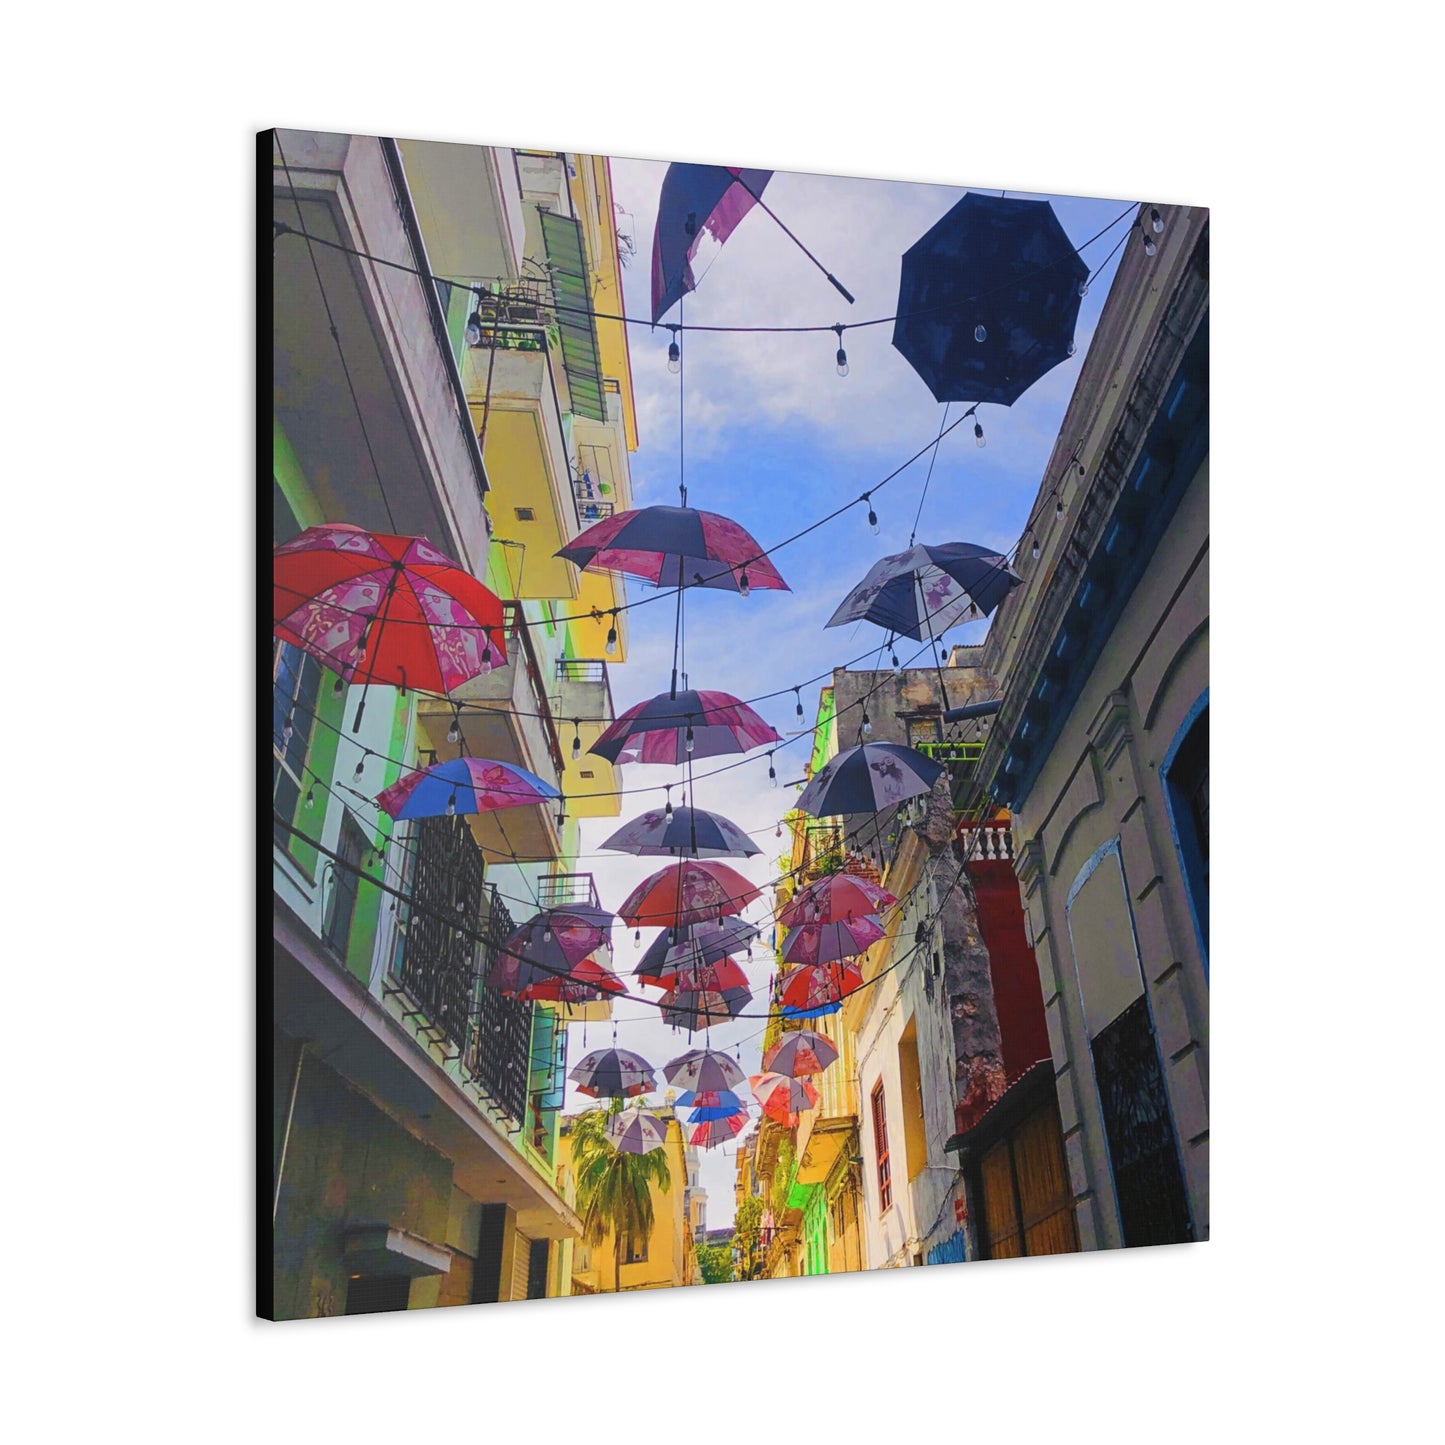 Umbrellas of Havana - Gallery Canvas